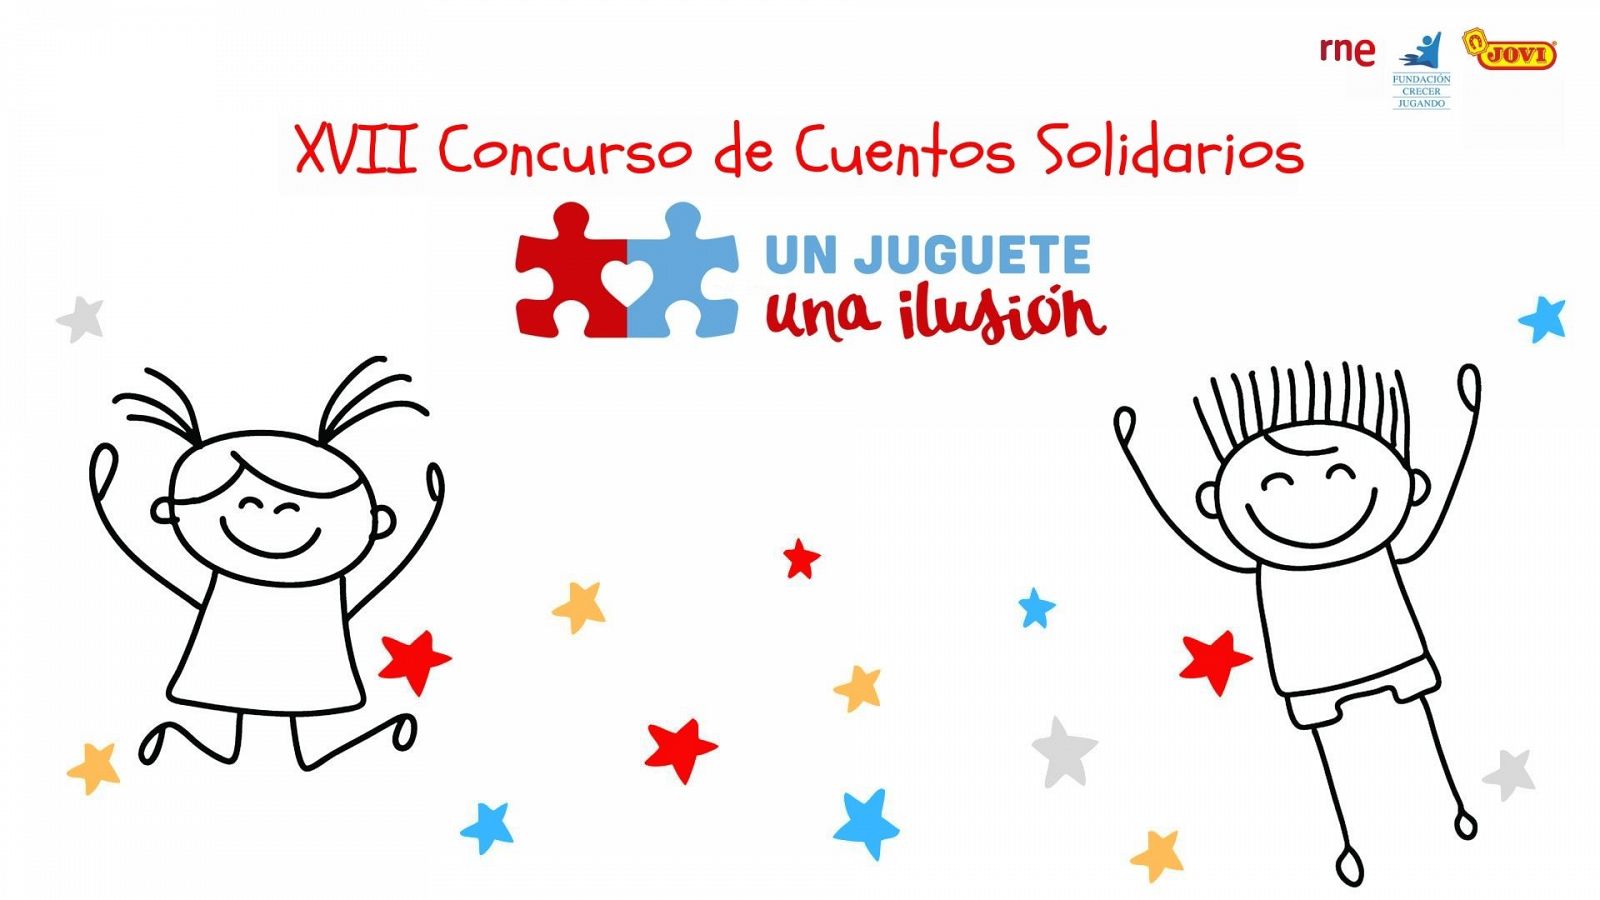 XVII Concurso de Cuentos Solidarios 'Un juguete, una ilusión'.